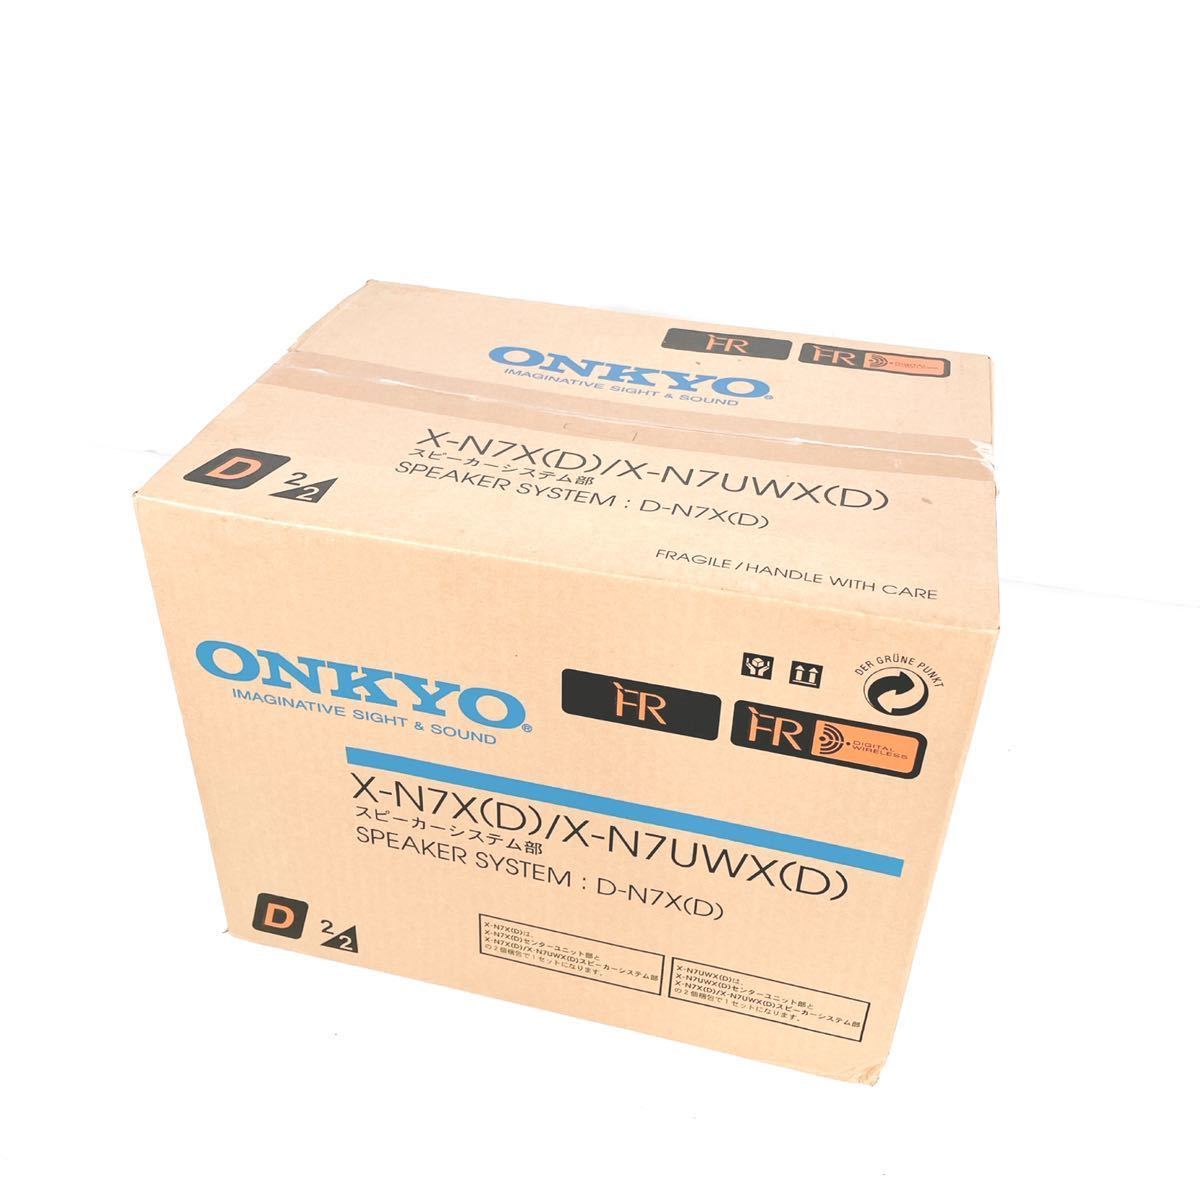 ONKYO X-N7 オークション比較 - 価格.com